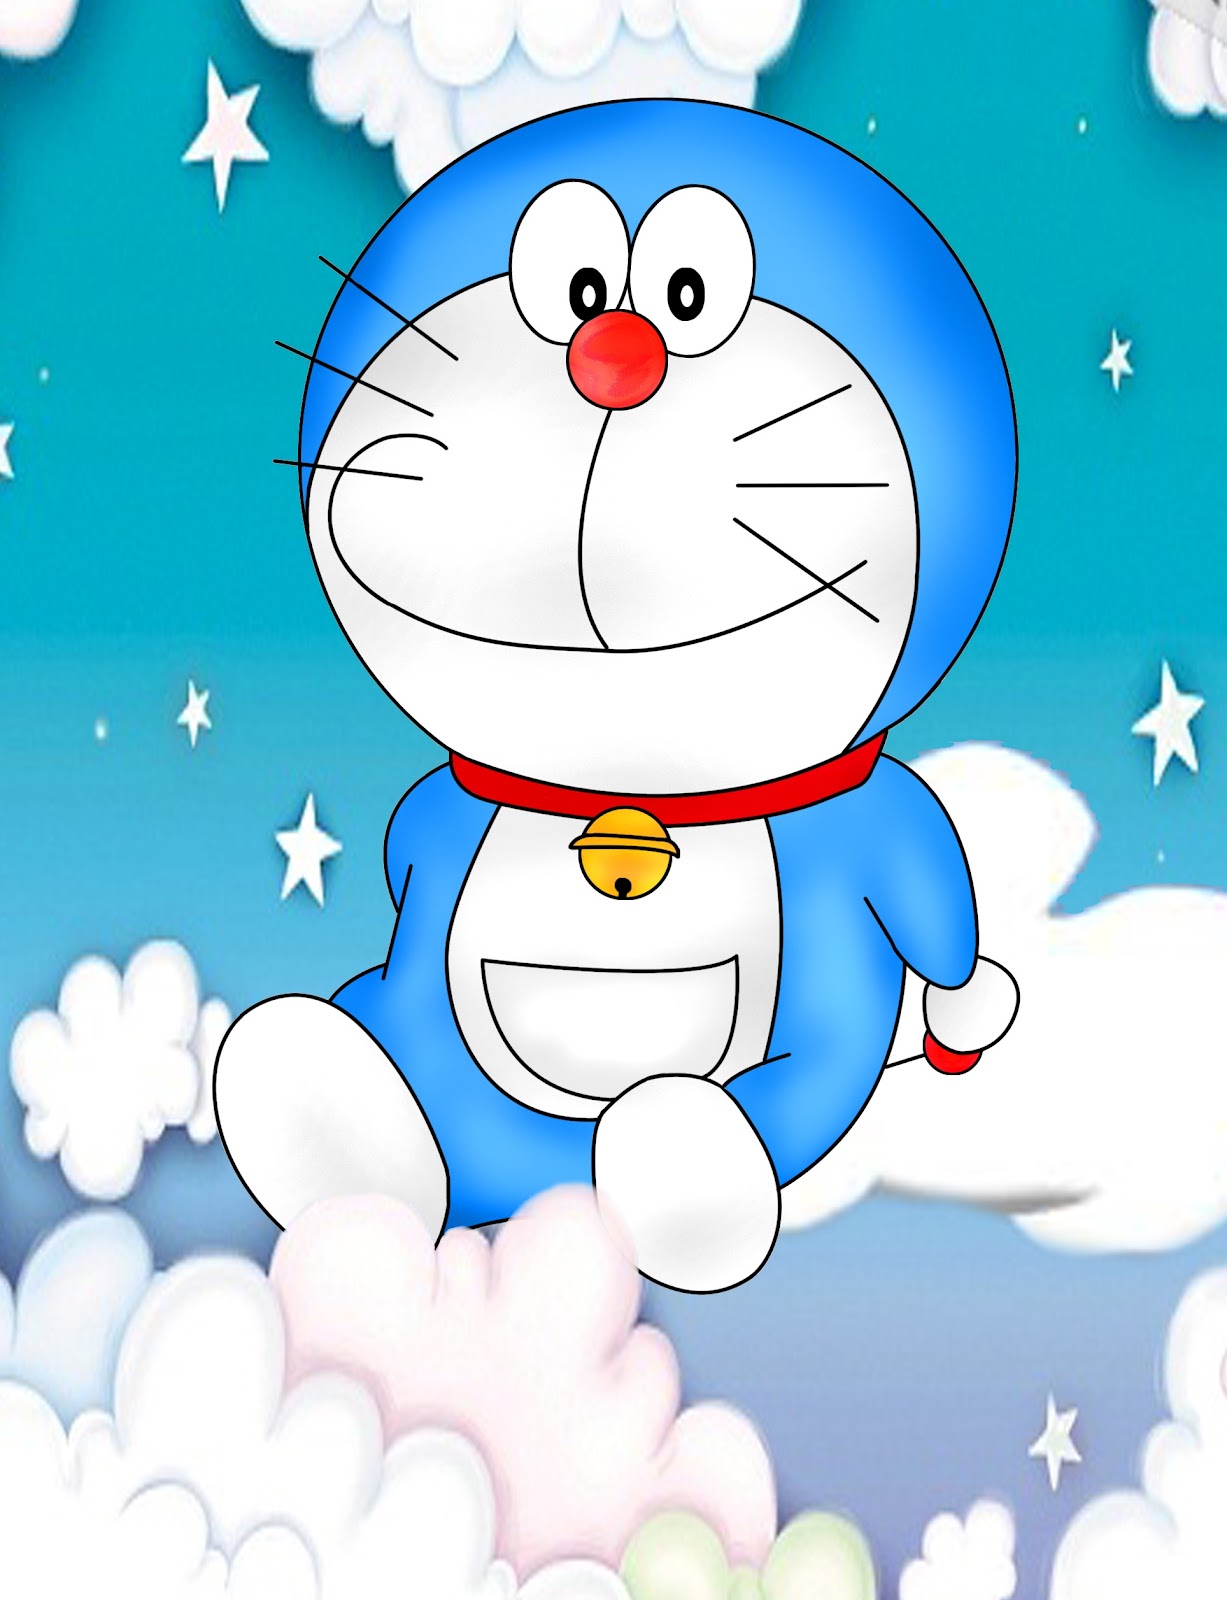 Gambar Doraemon Lucu Untuk Wallpaper - Gudang Wallpaper